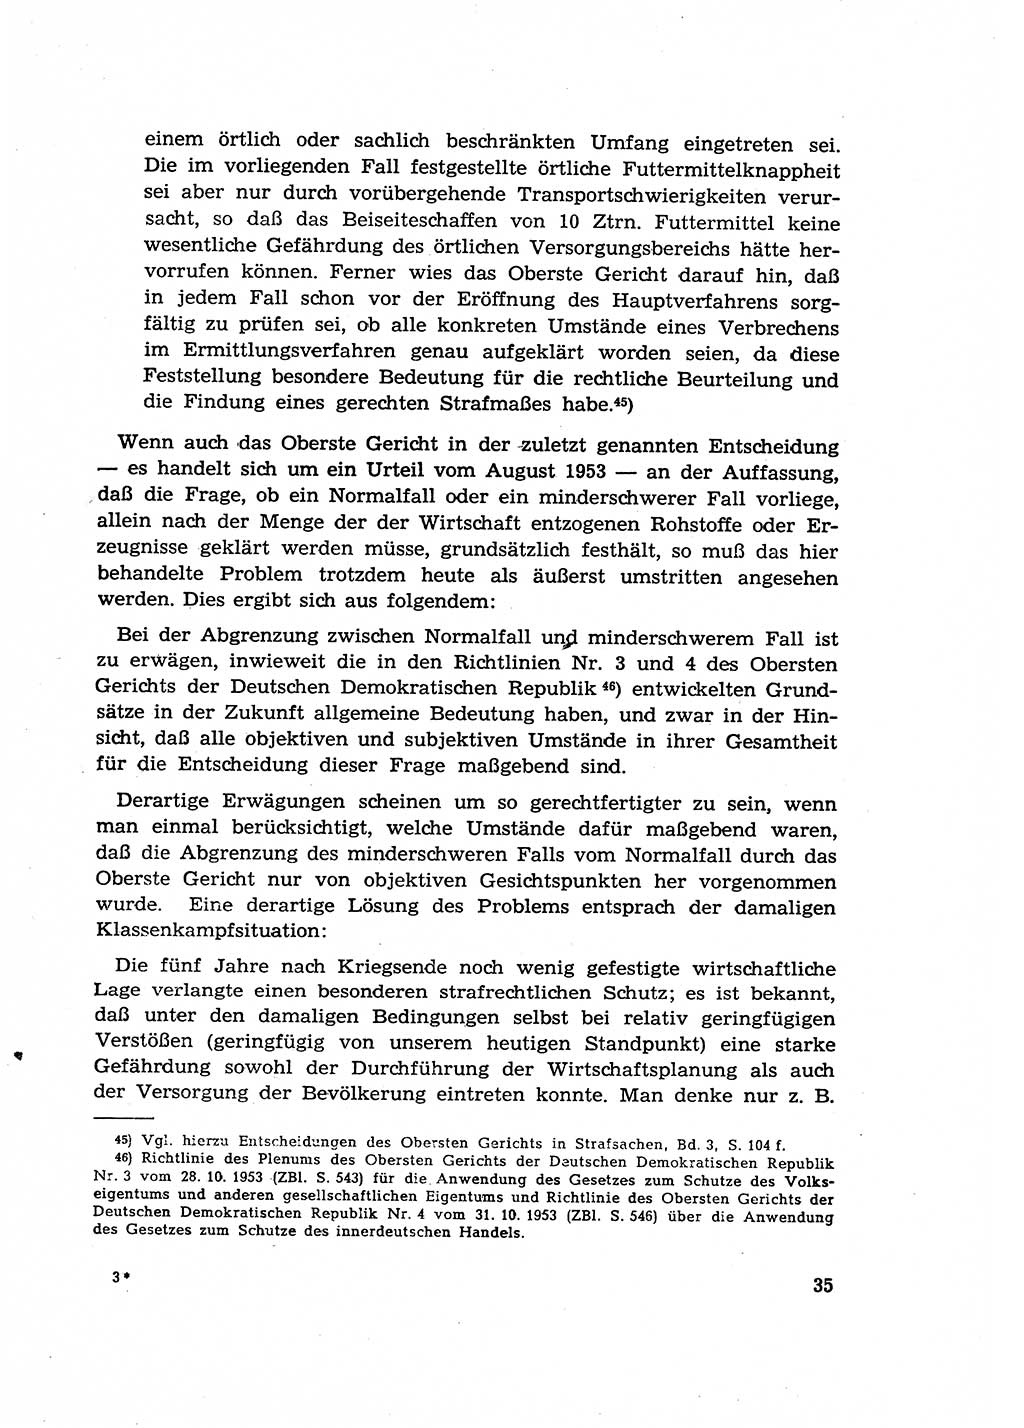 Materialien zum Strafrecht, Besonderer Teil [Deutsche Demokratische Republik (DDR)] 1955, Seite 35 (Mat. Strafr. BT DDR 1955, S. 35)